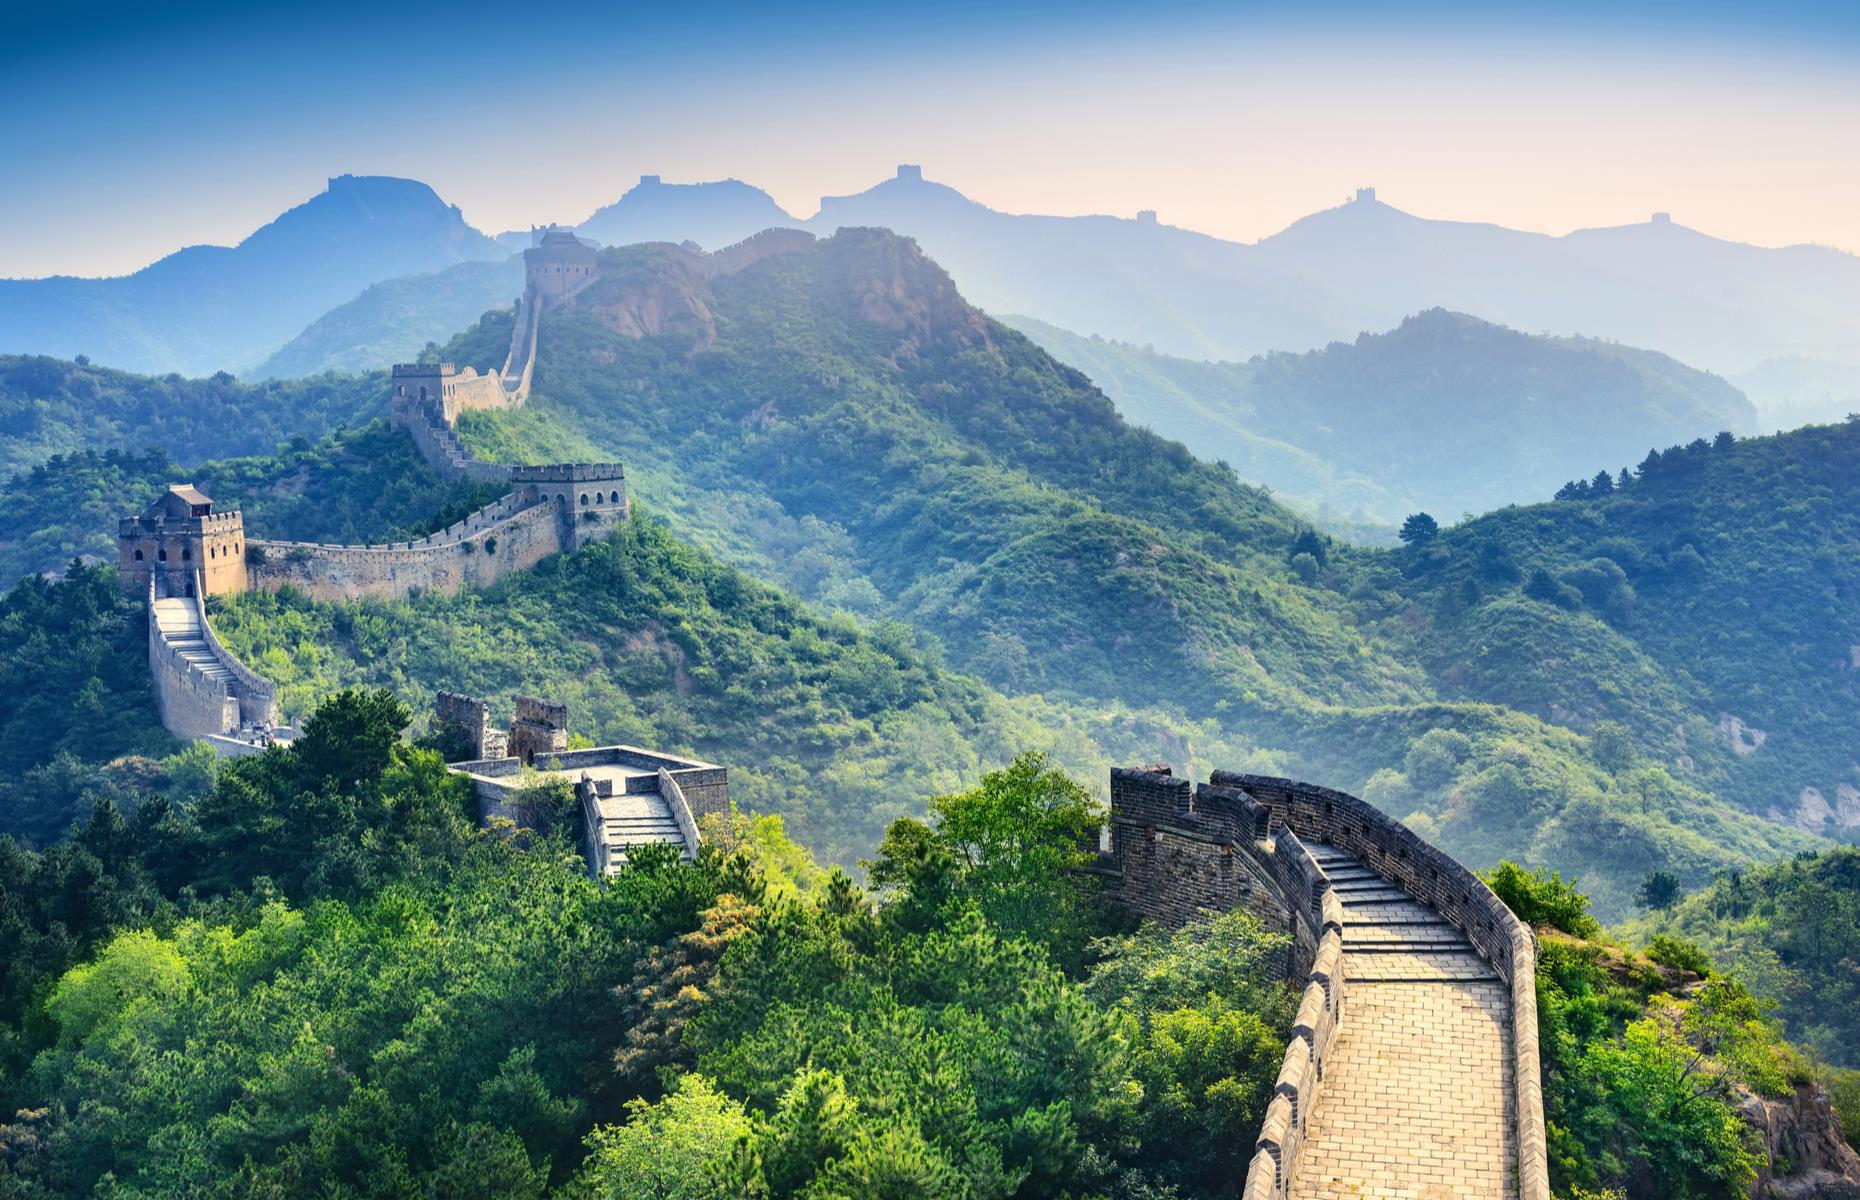 The Great Wall of China, China 